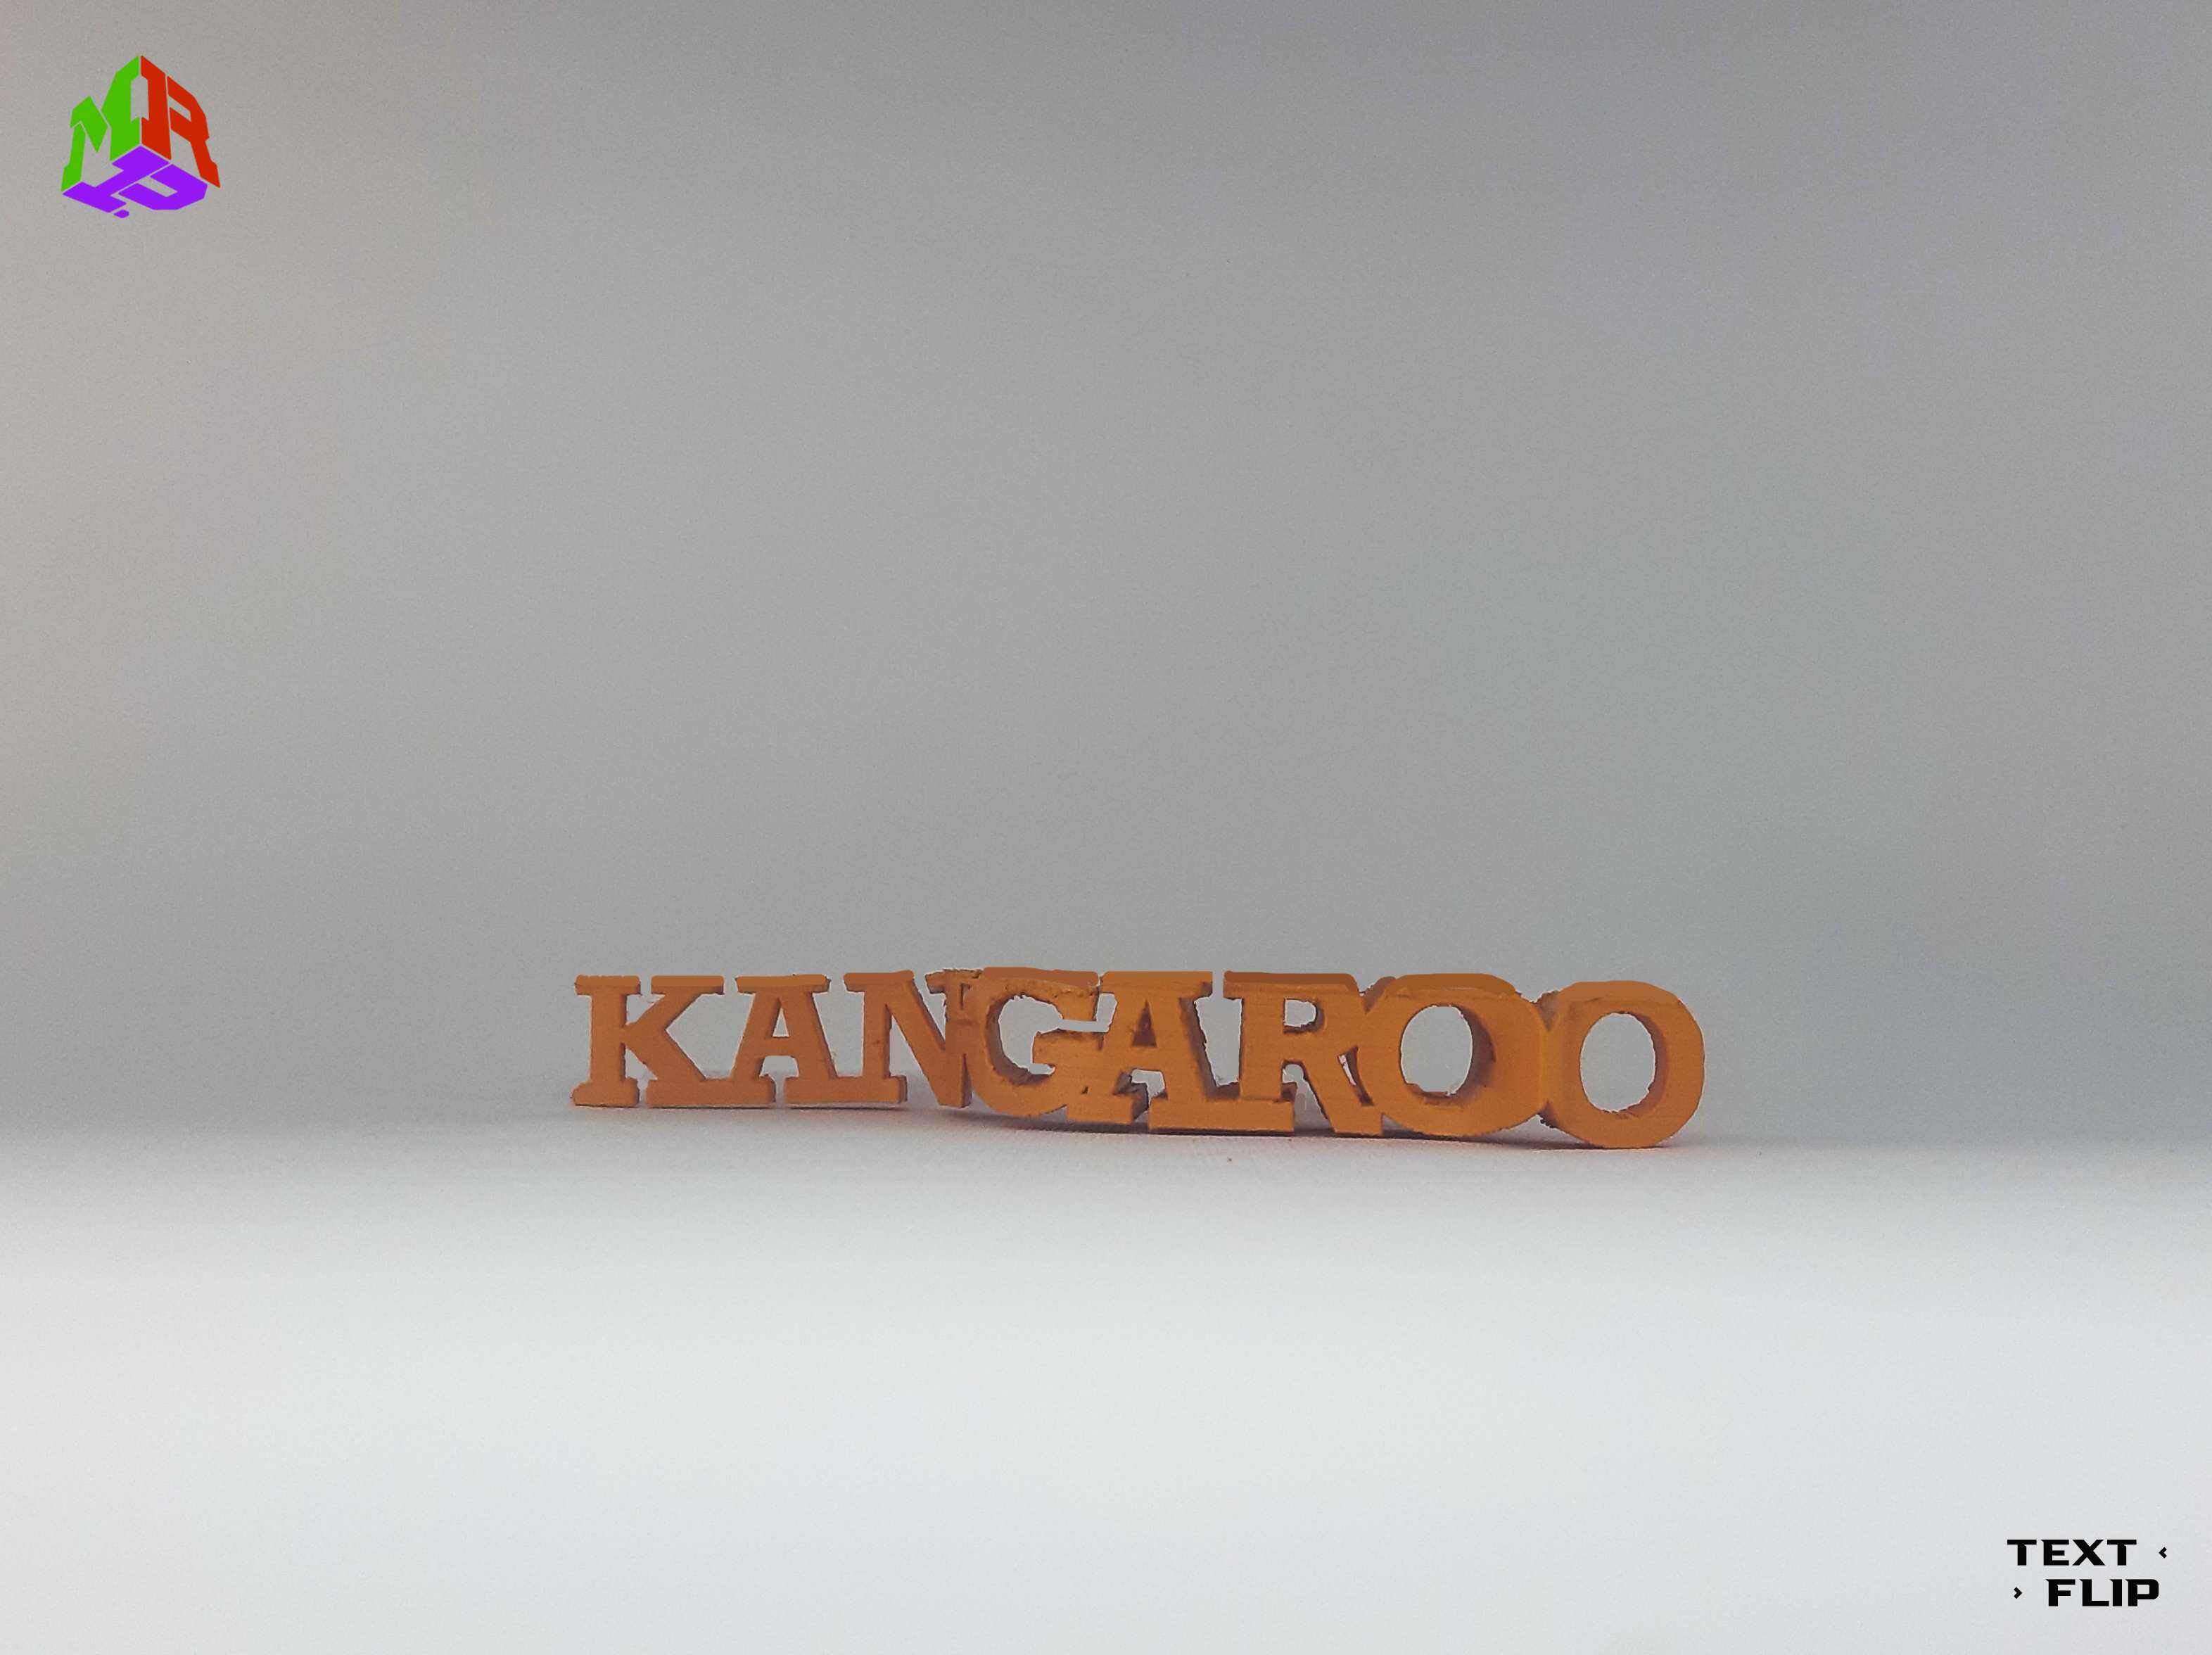 Text Flip - Kangaroo